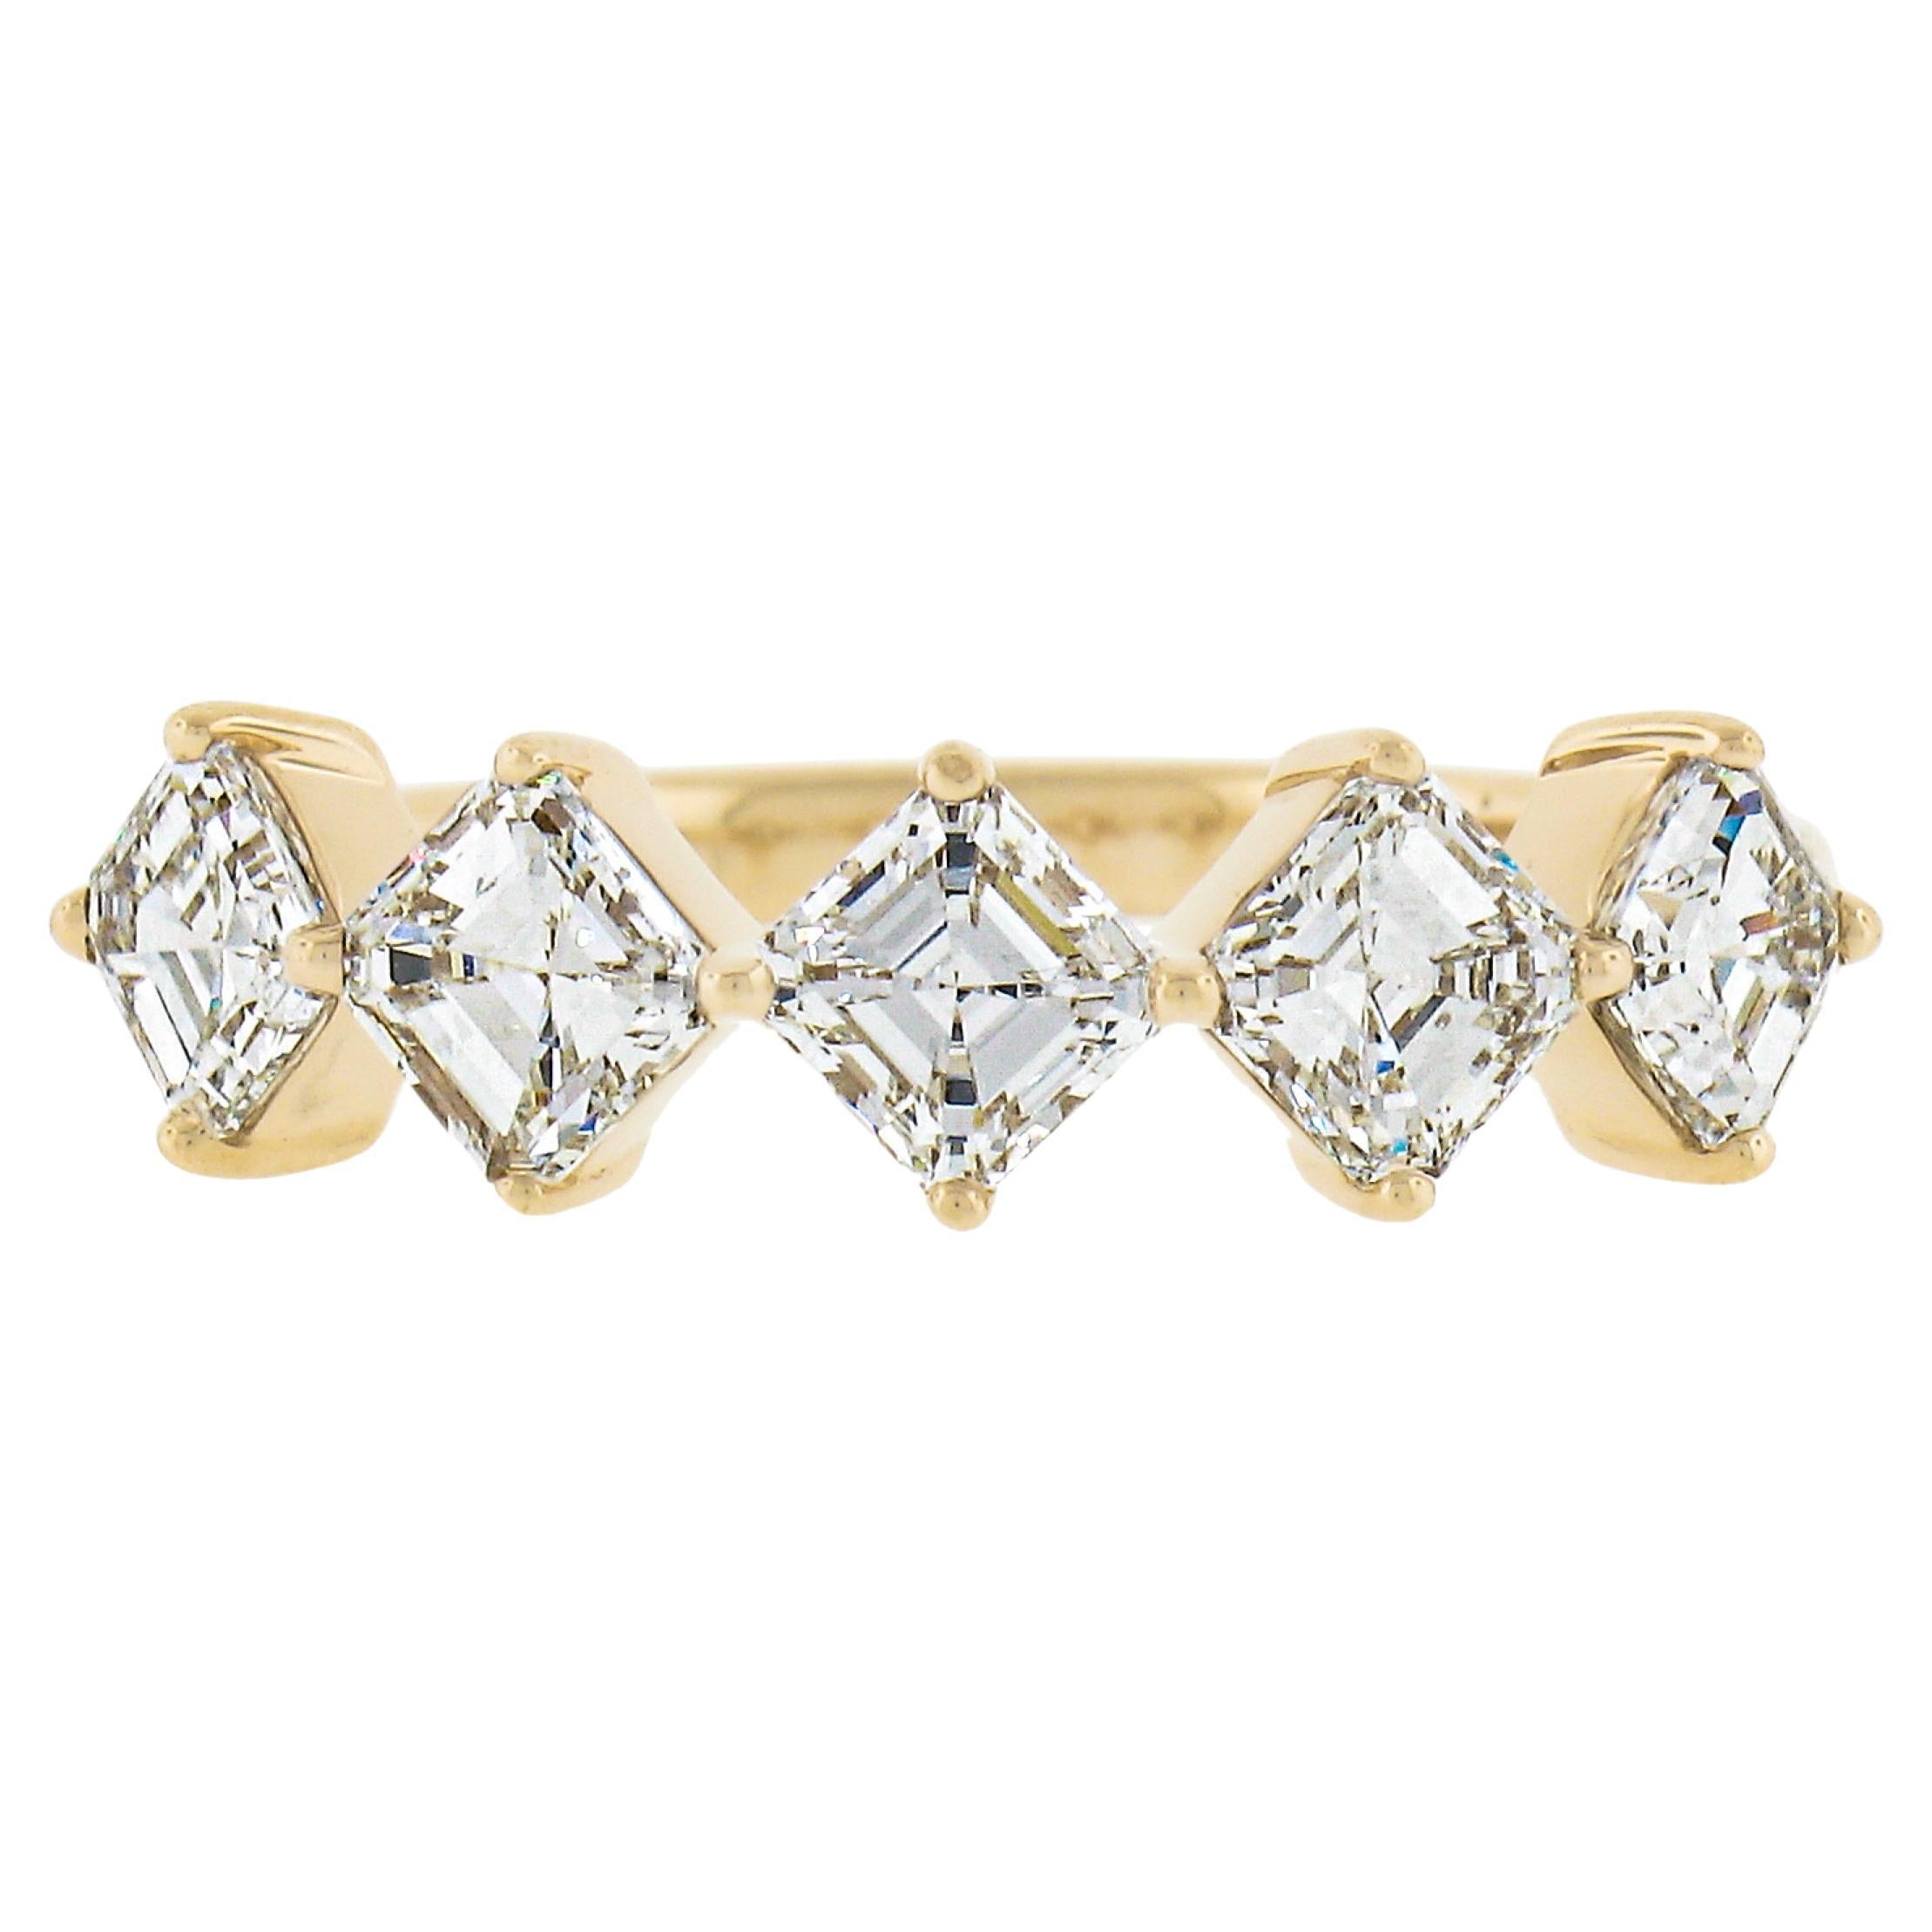 New 14k Yellow Gold 1.56ctw Asscher Cut Diamond Stackable Wedding Band Ring